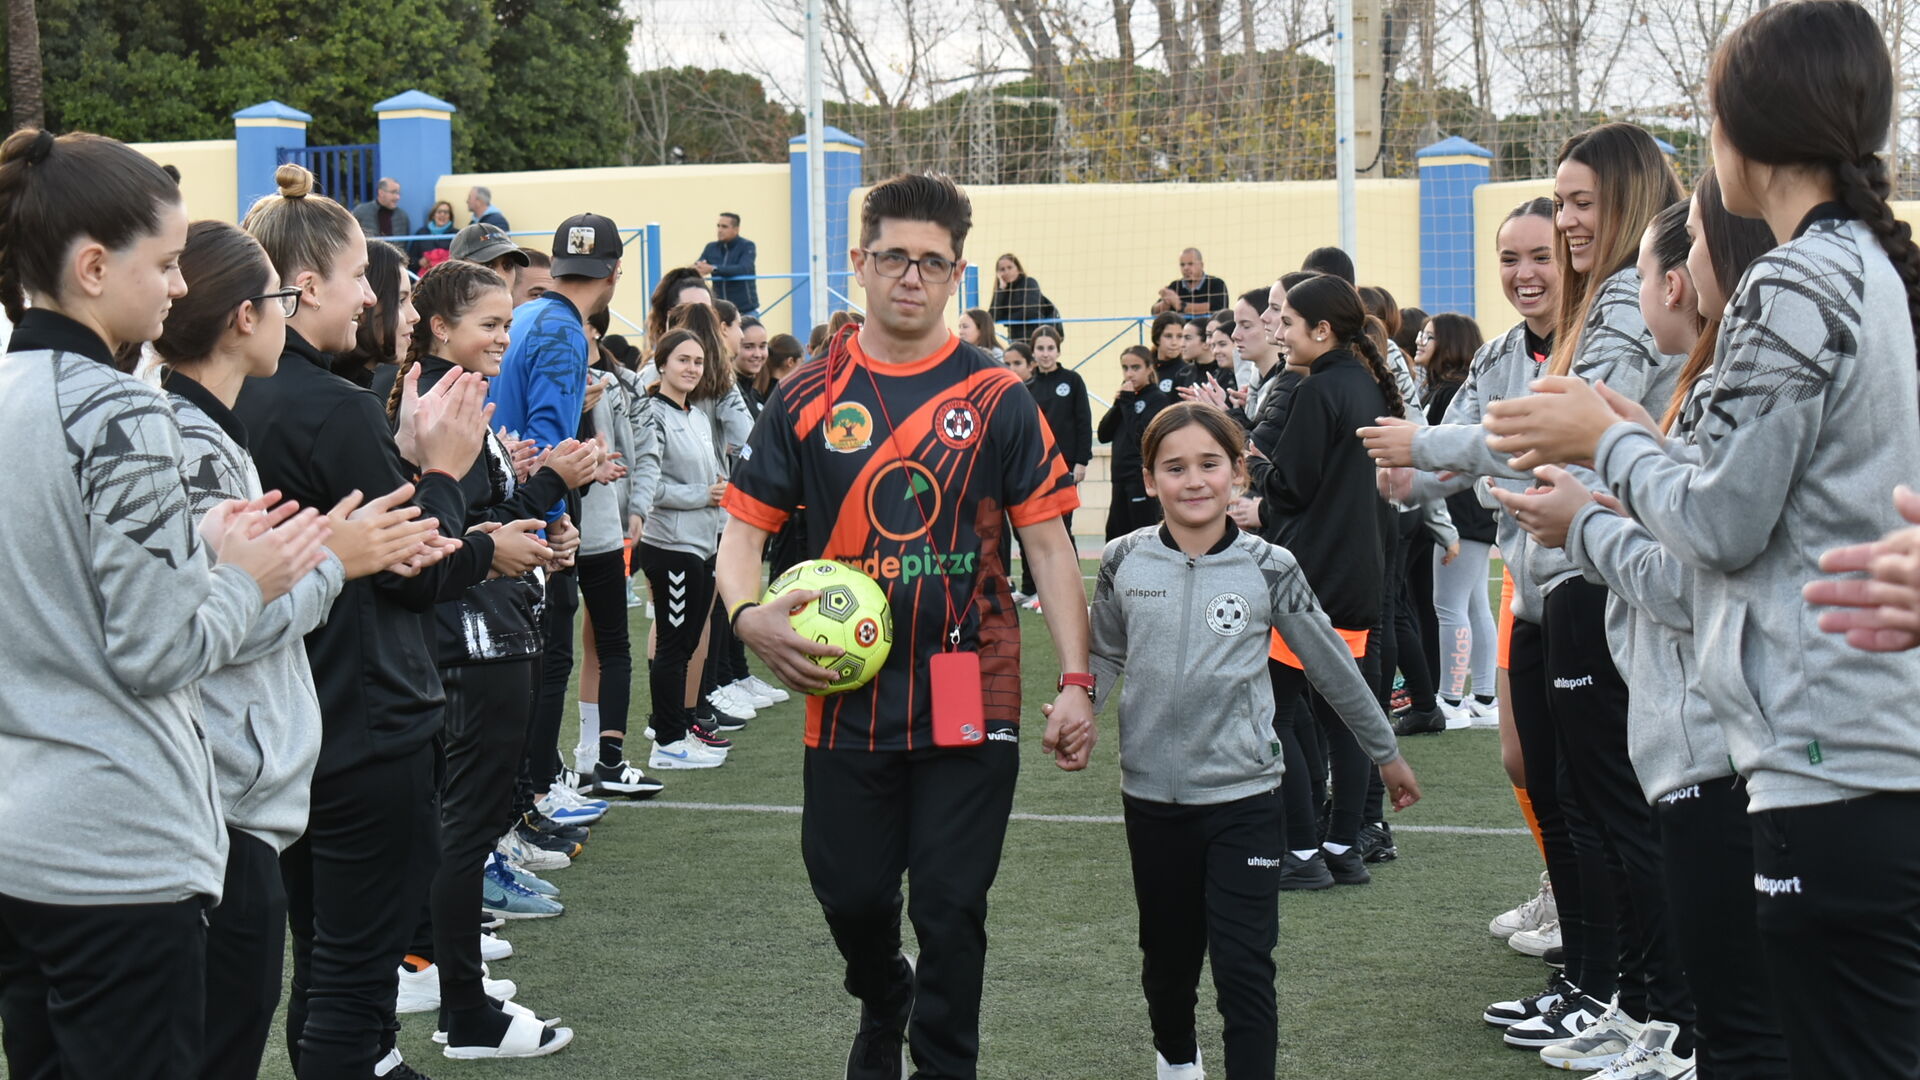 El Deportivo Alhaur&iacute;n presenta su equipo de jugadores con diversidad funcional